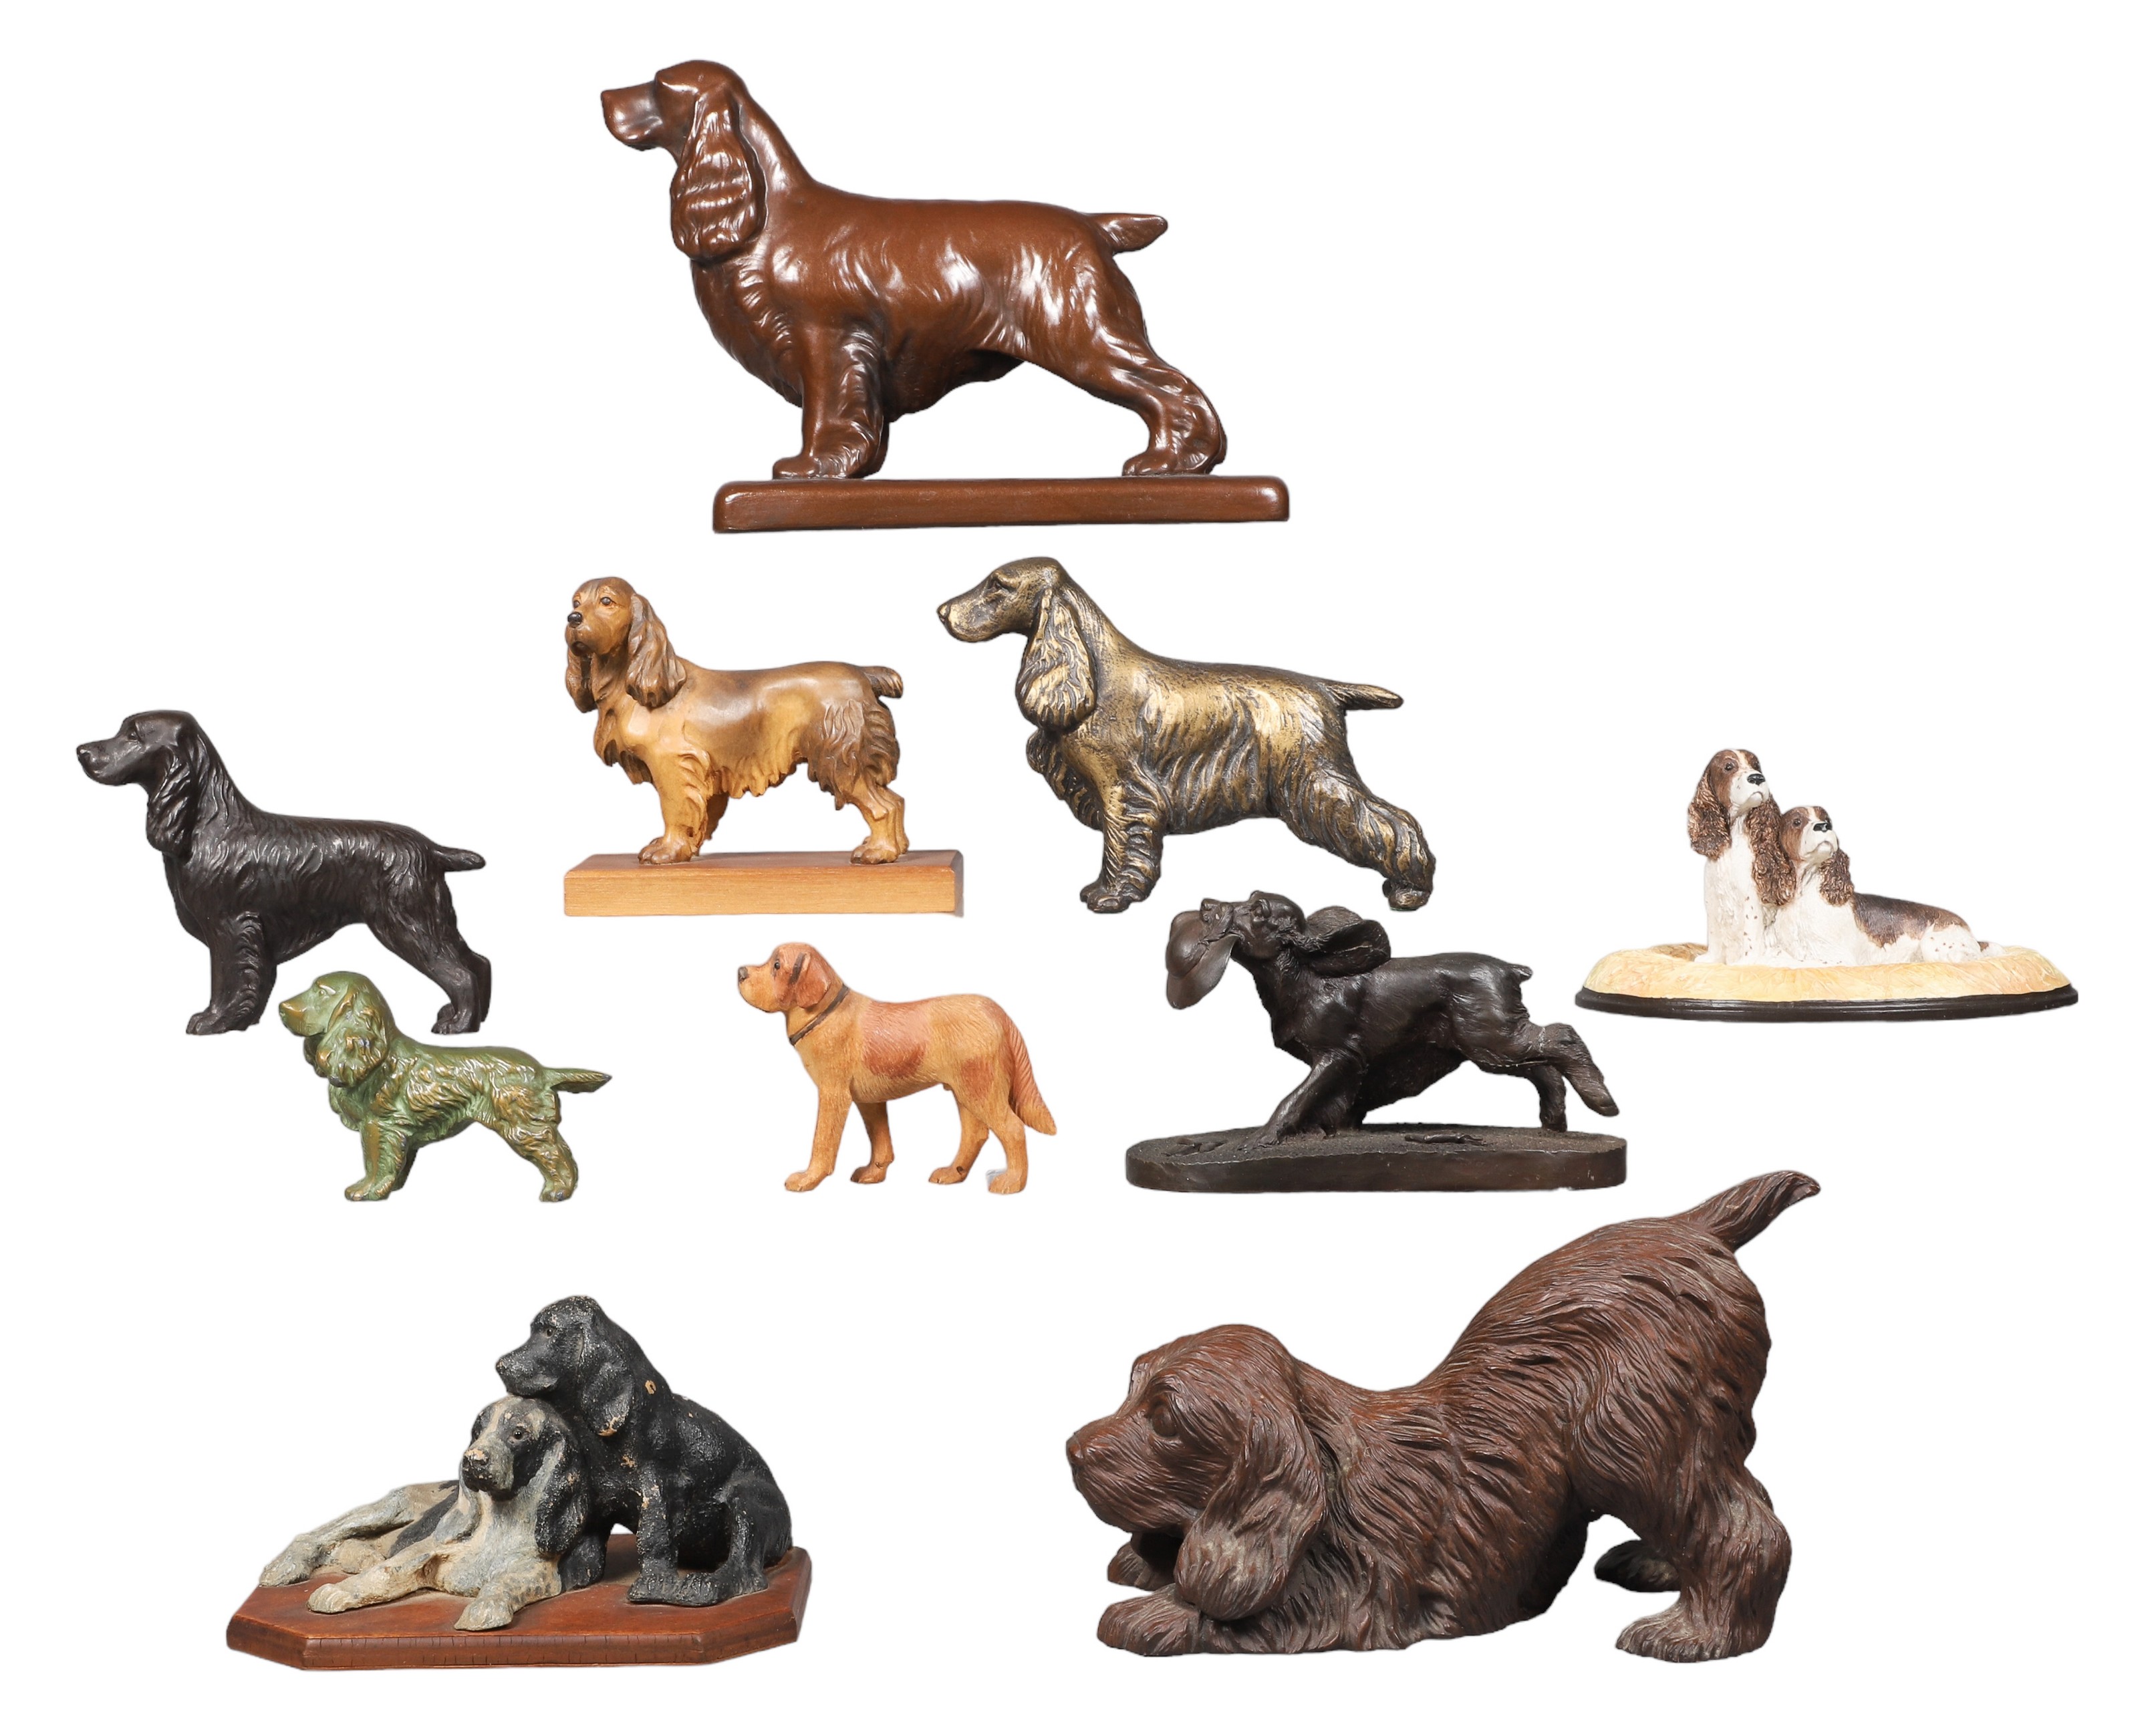  10 Spaniel dog figurines including 2e1175